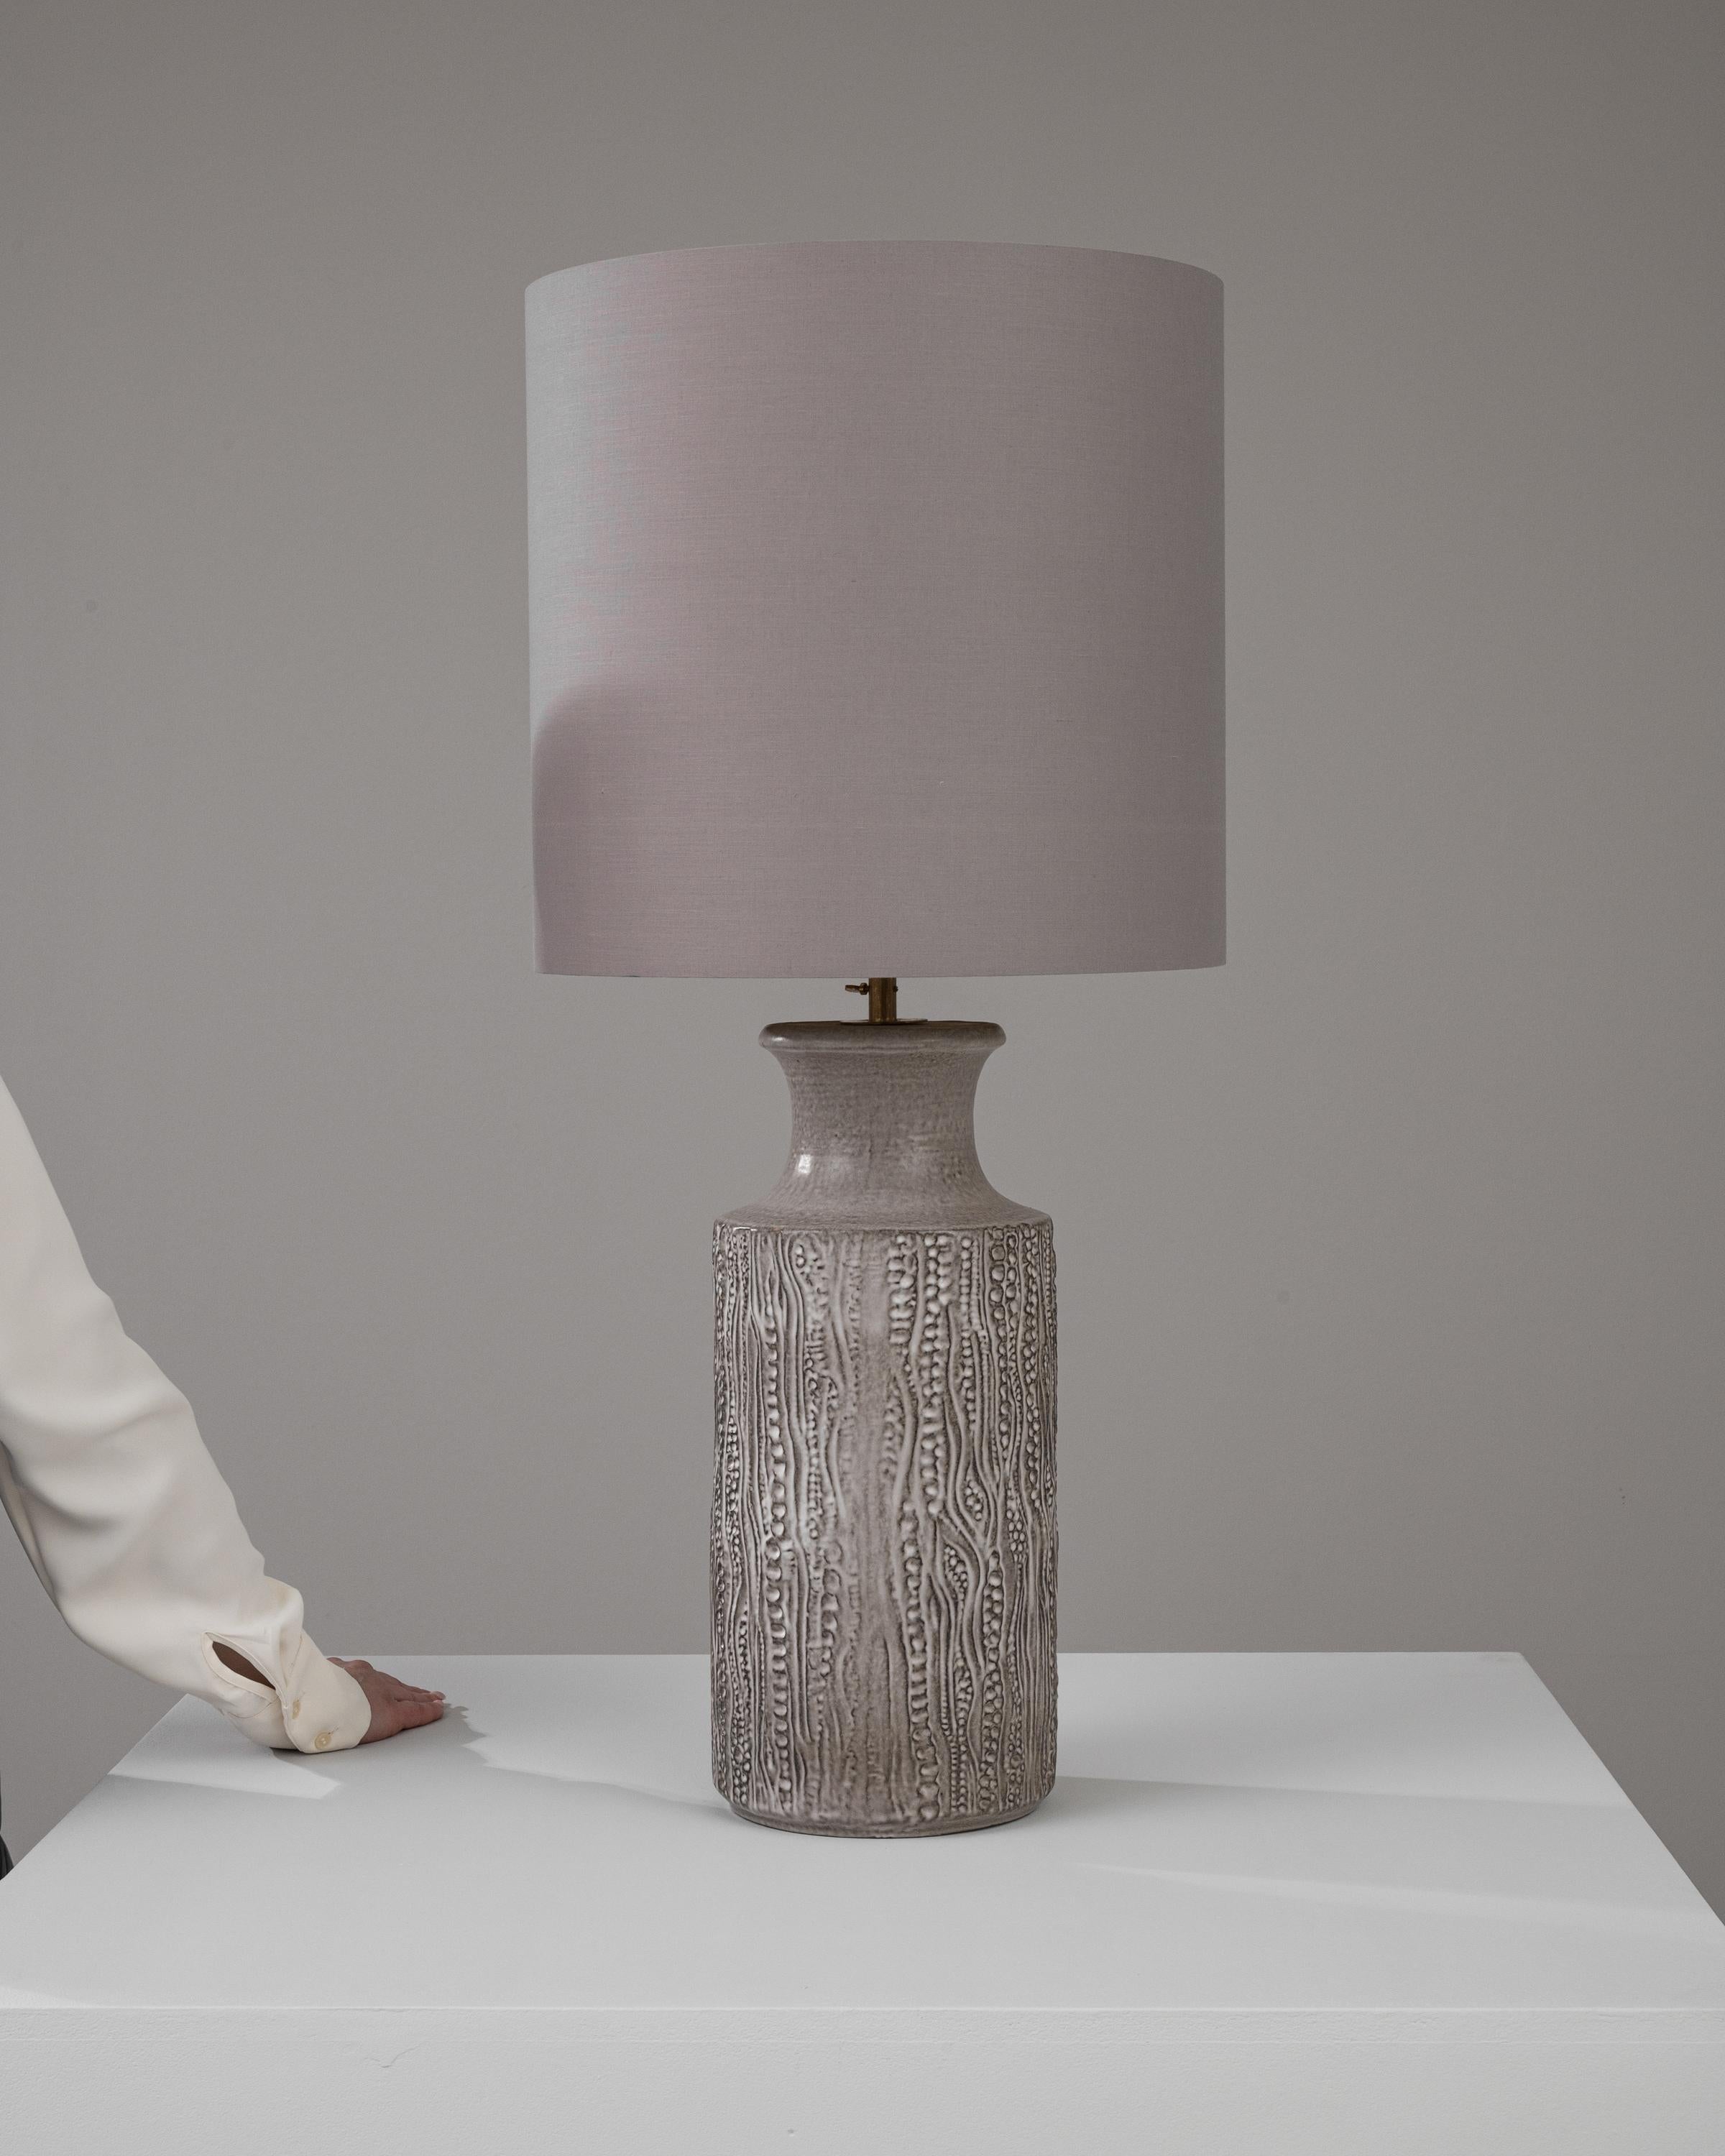 Holen Sie sich ein Stück deutsches Design des 20. Jahrhunderts in Ihr Zuhause mit dieser charaktervollen Keramik-Tischlampe, die mit einem malerischen seitlichen Griff ausgestattet ist und sowohl ästhetischen Charme als auch praktischen Nutzen